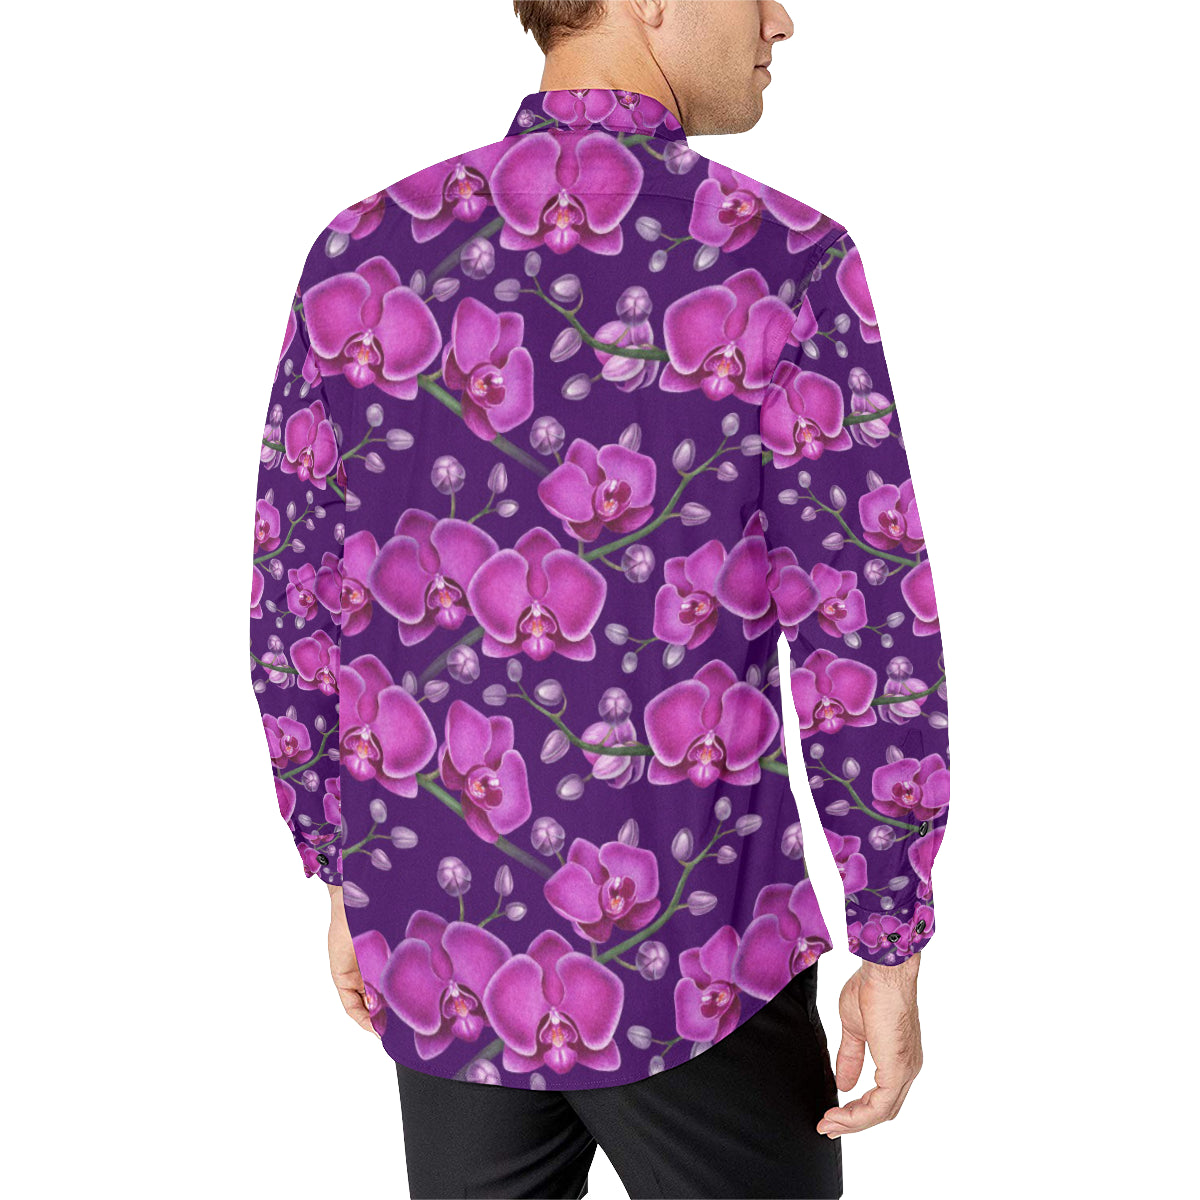 Orchid Pattern Print Design A03 Men's Long Sleeve Dress Shirt - JorJune